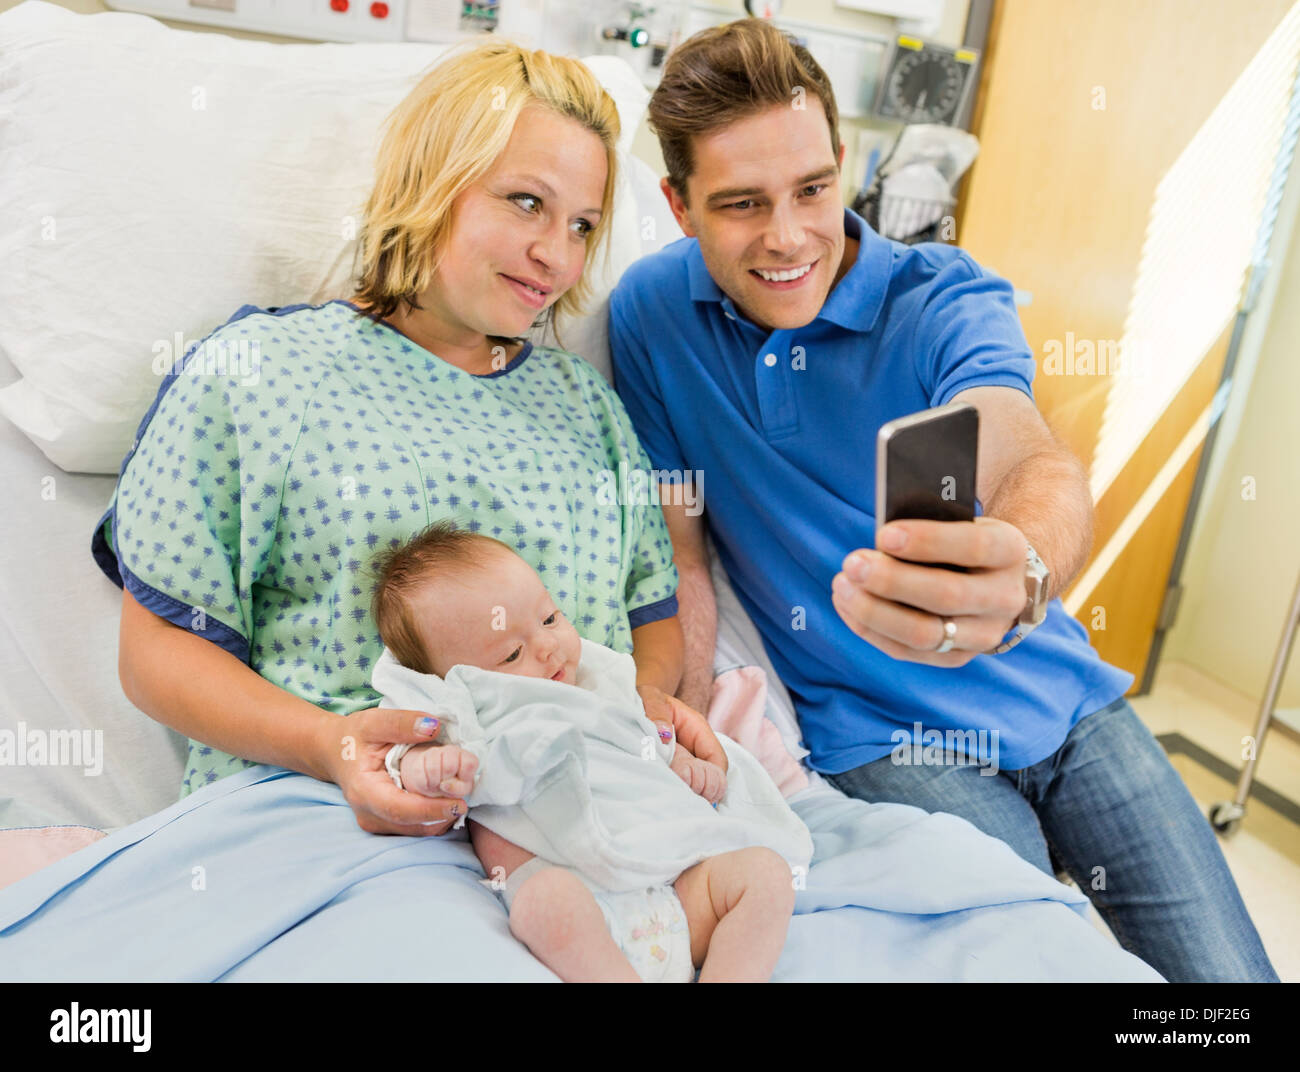 Mann mit Frau und Babygirl unter Selbstportrait durch Mobile P Stockfoto